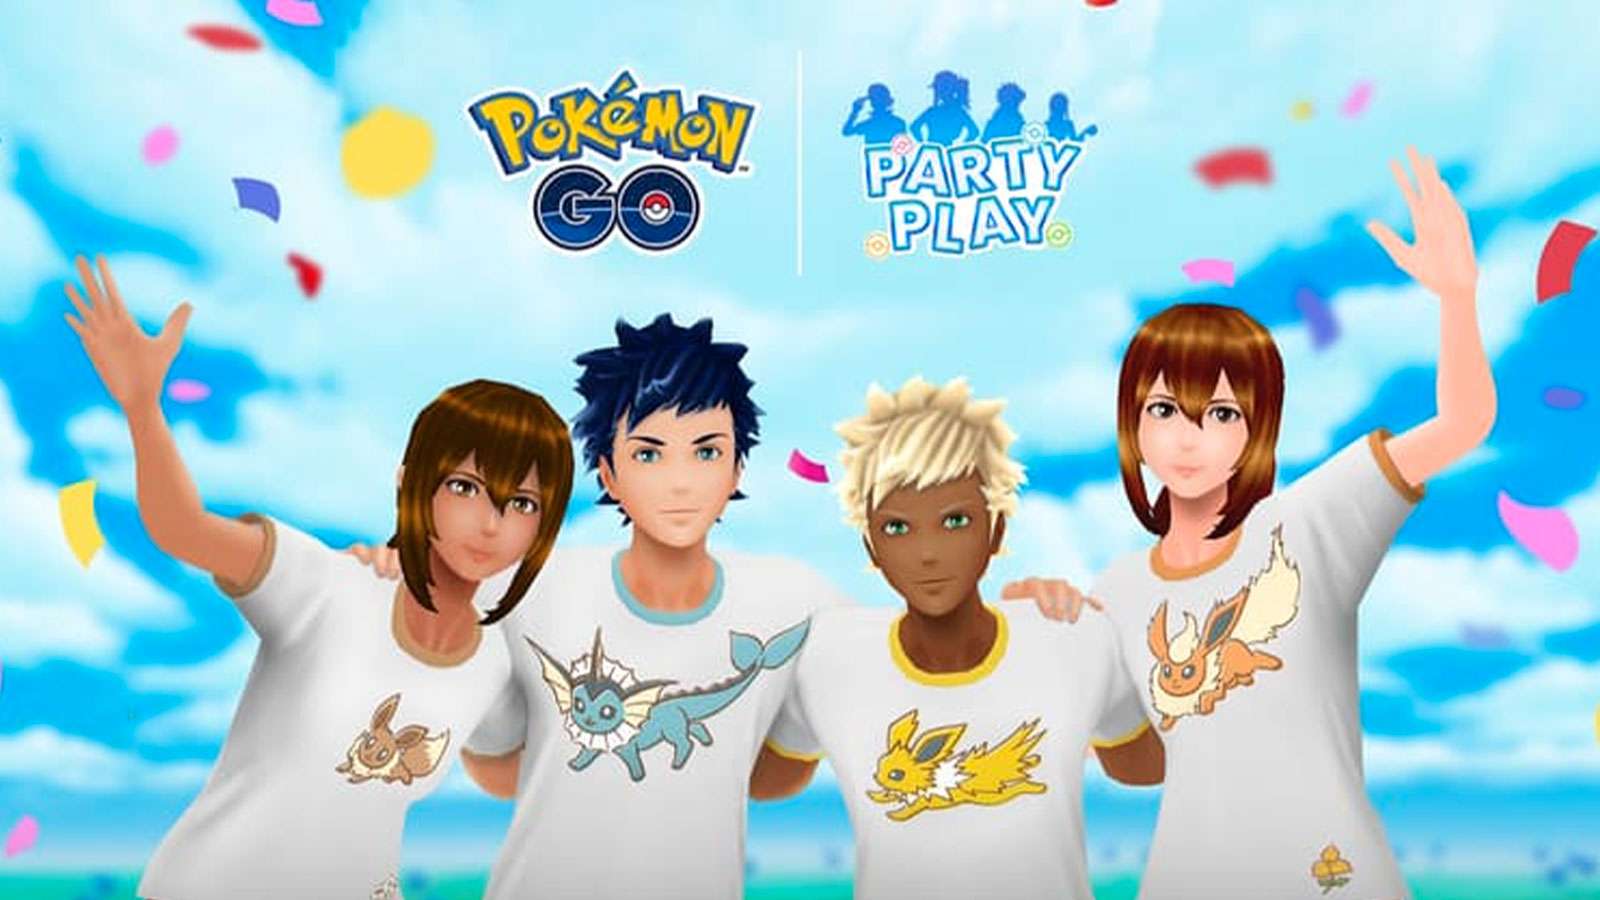 La fonctionnalité Party Play de Pokémon Go